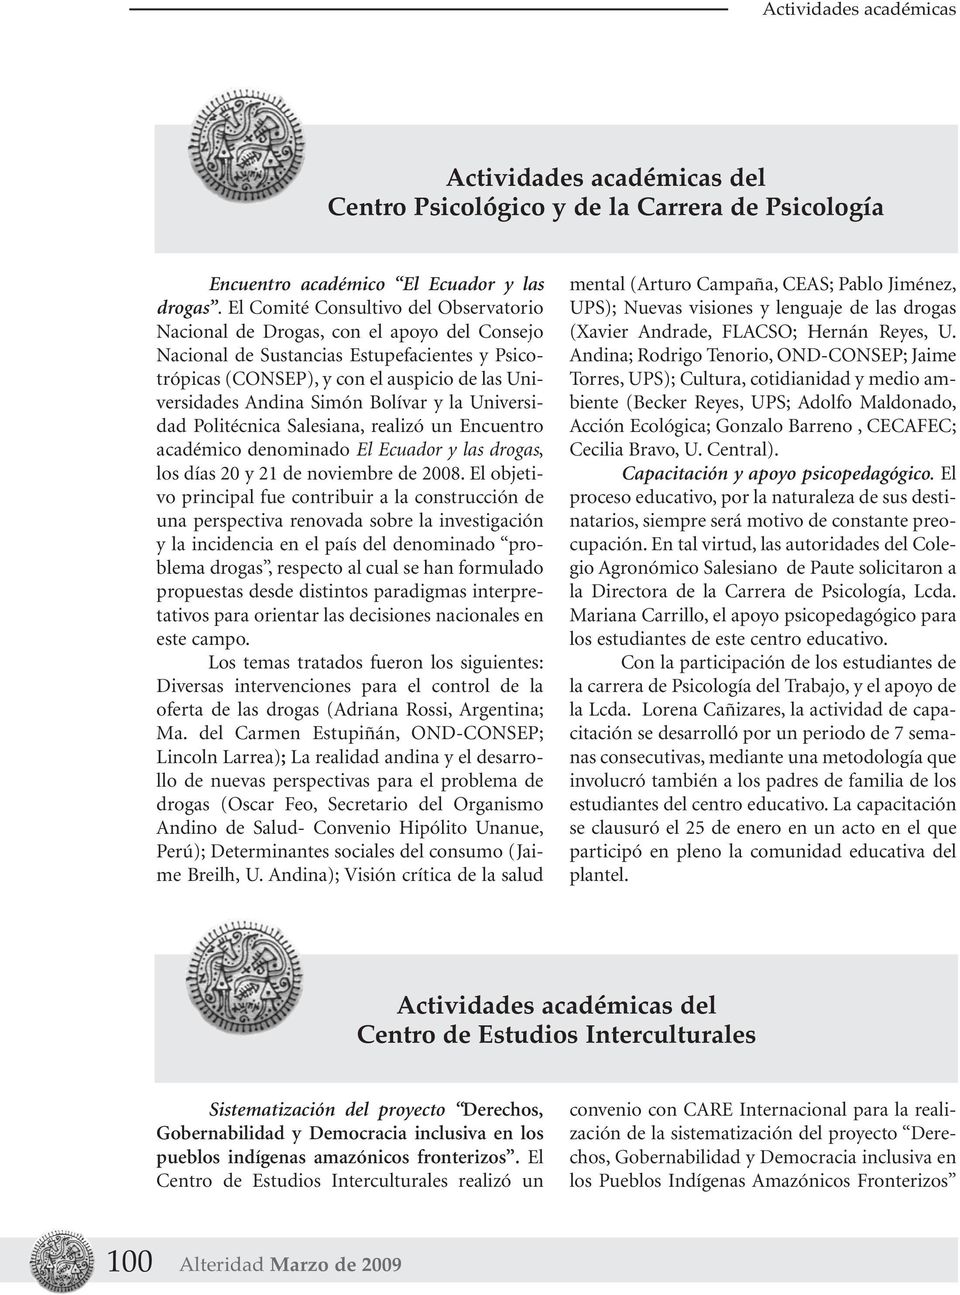 Bolívar y la Universidad Politécnica Salesiana, realizó un Encuentro académico denominado El Ecuador y las drogas, los días 20 y 21 de noviembre de 2008.